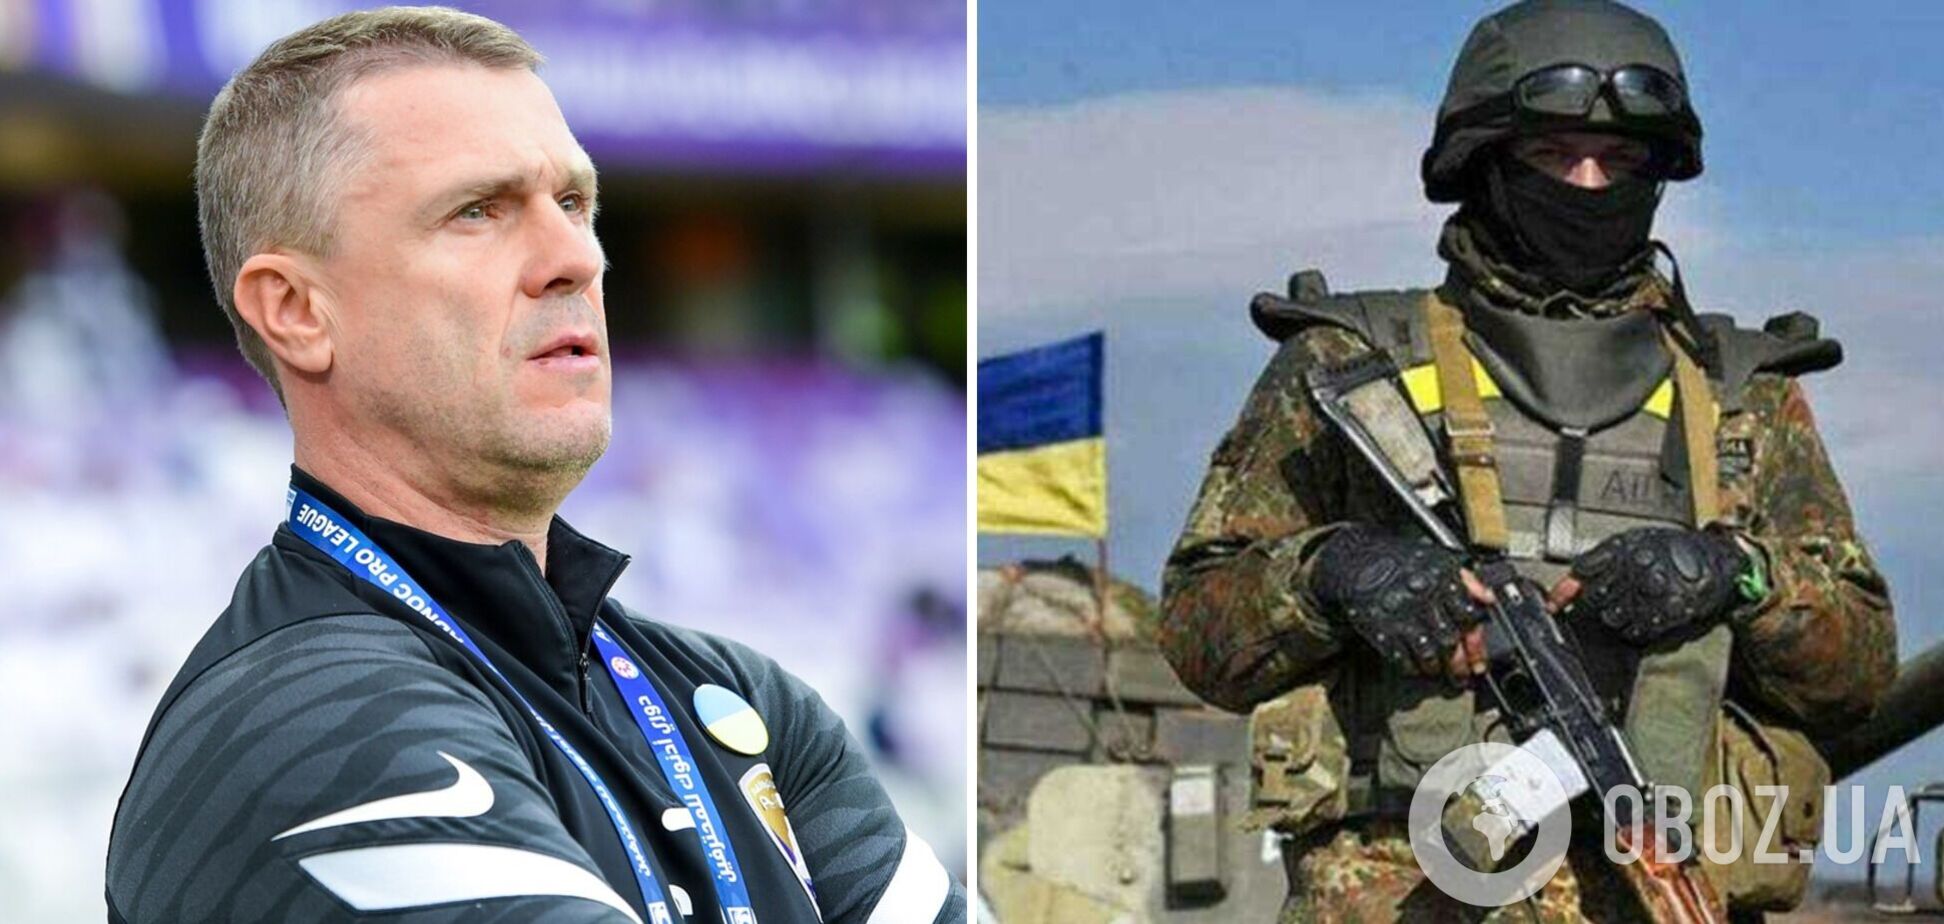 'Вернусь в Украину и возьму оружие': Ребров собирается защищать страну и родителей, которые остались в Киеве